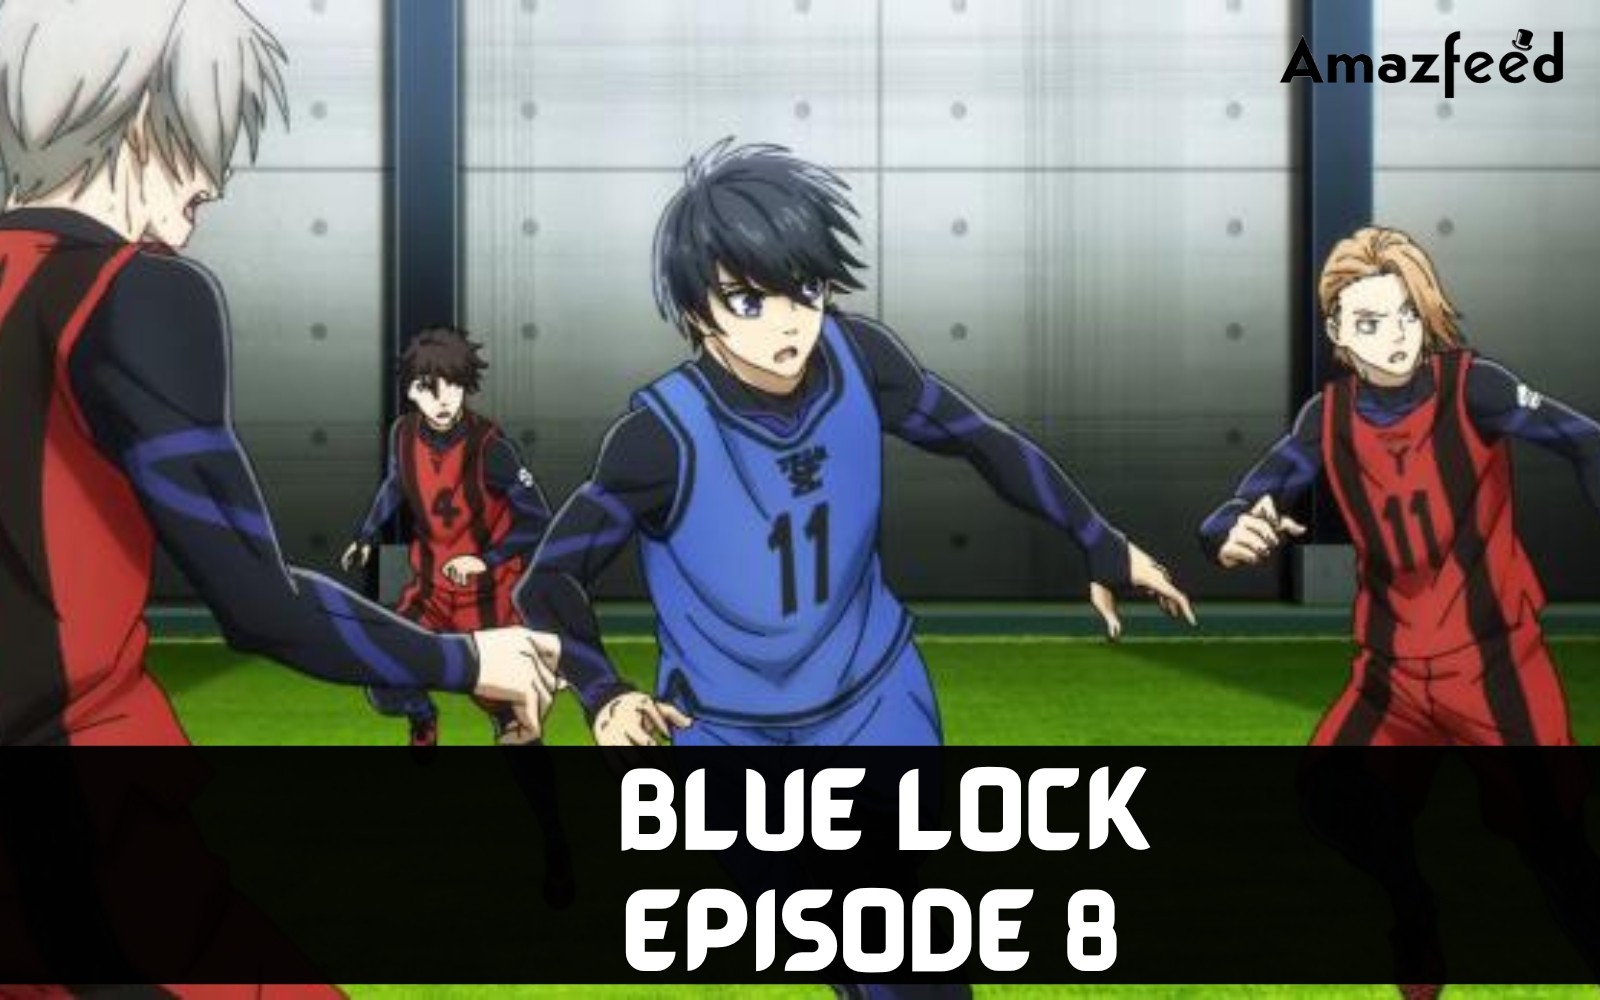 Episode 8, Blue Lock Wiki